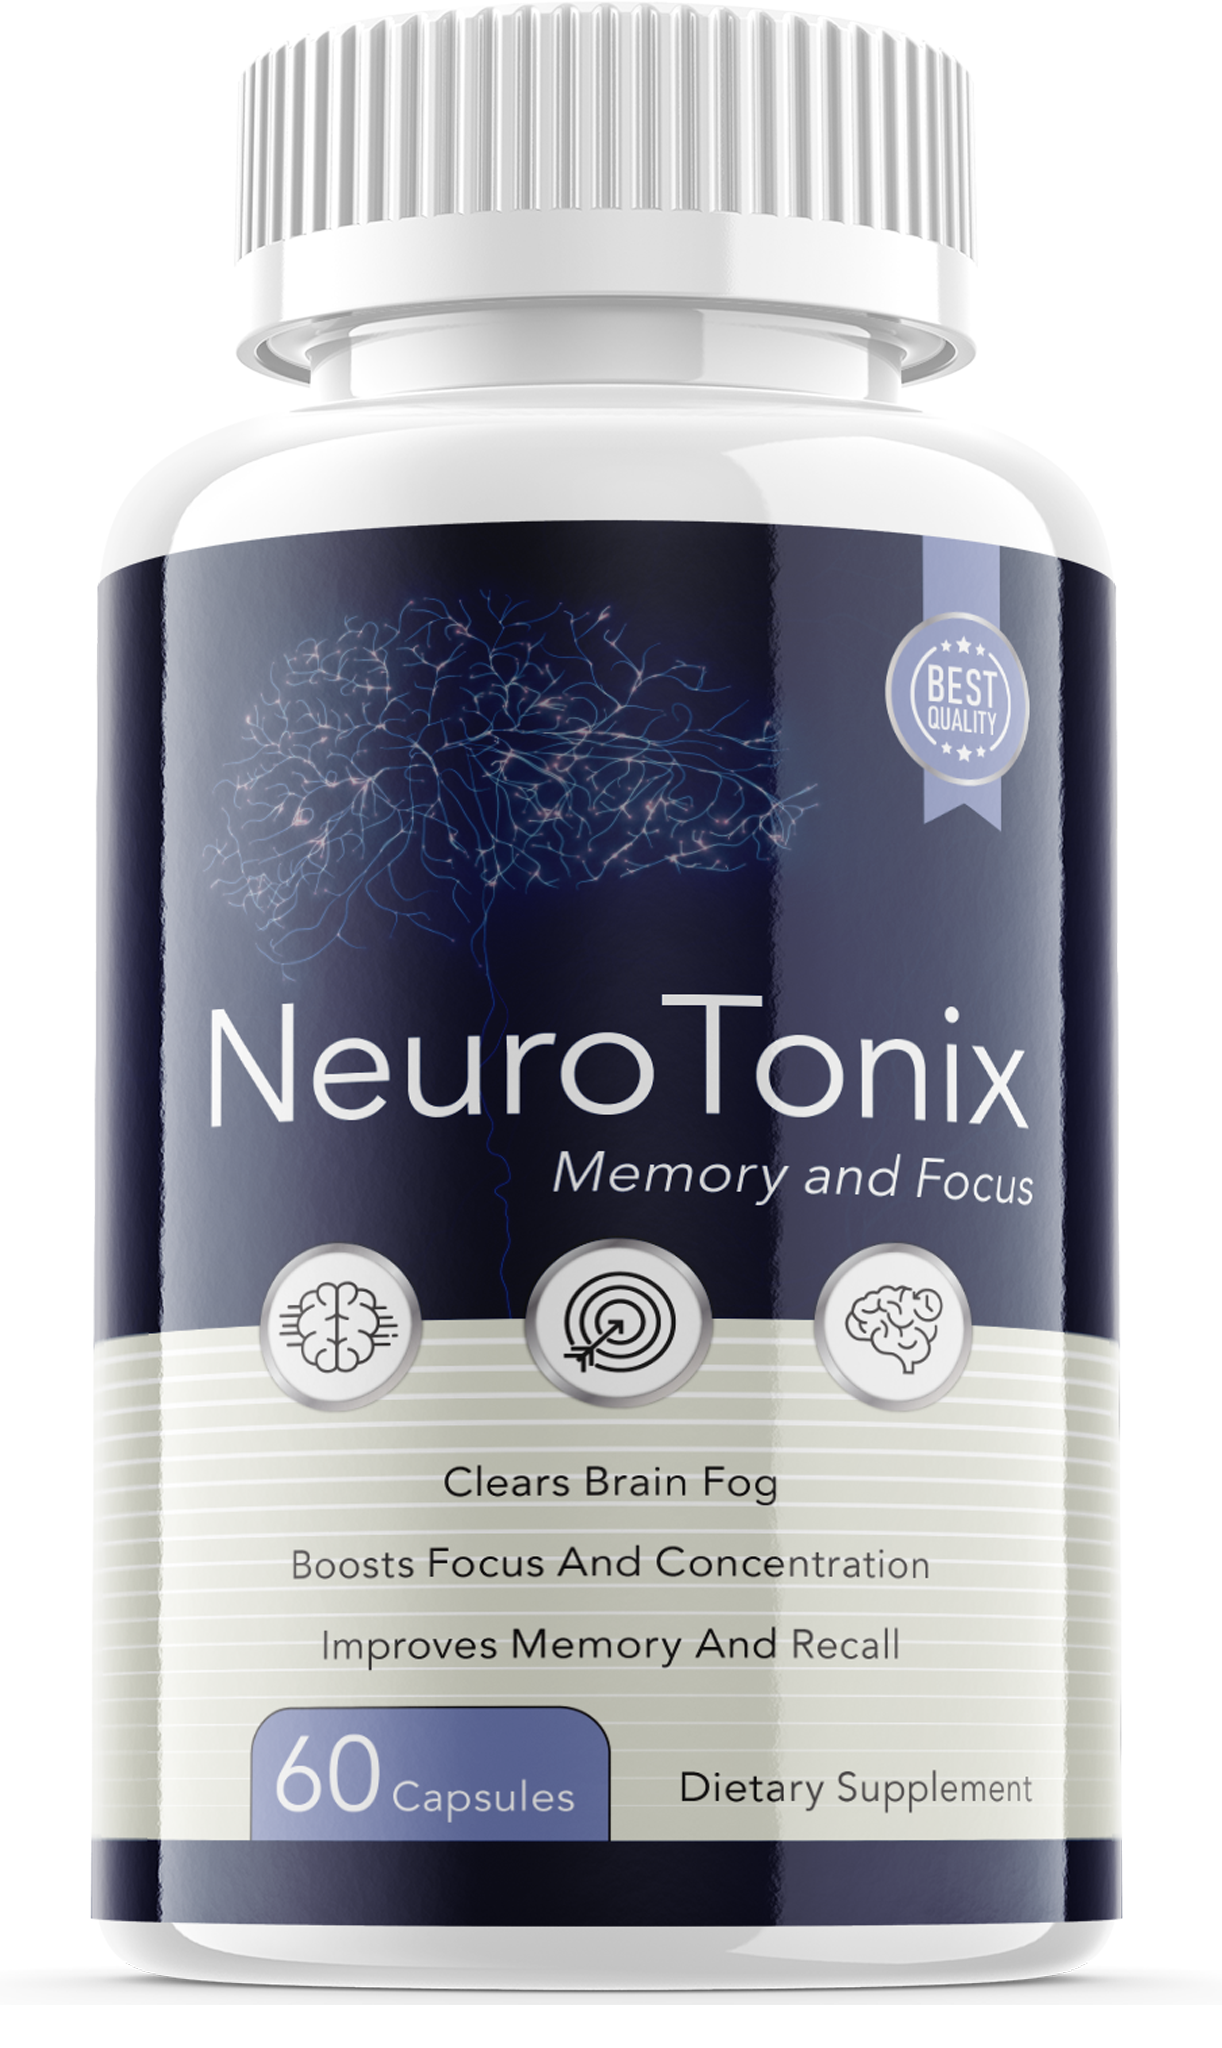 NeuroTonix Brain Booster Pills